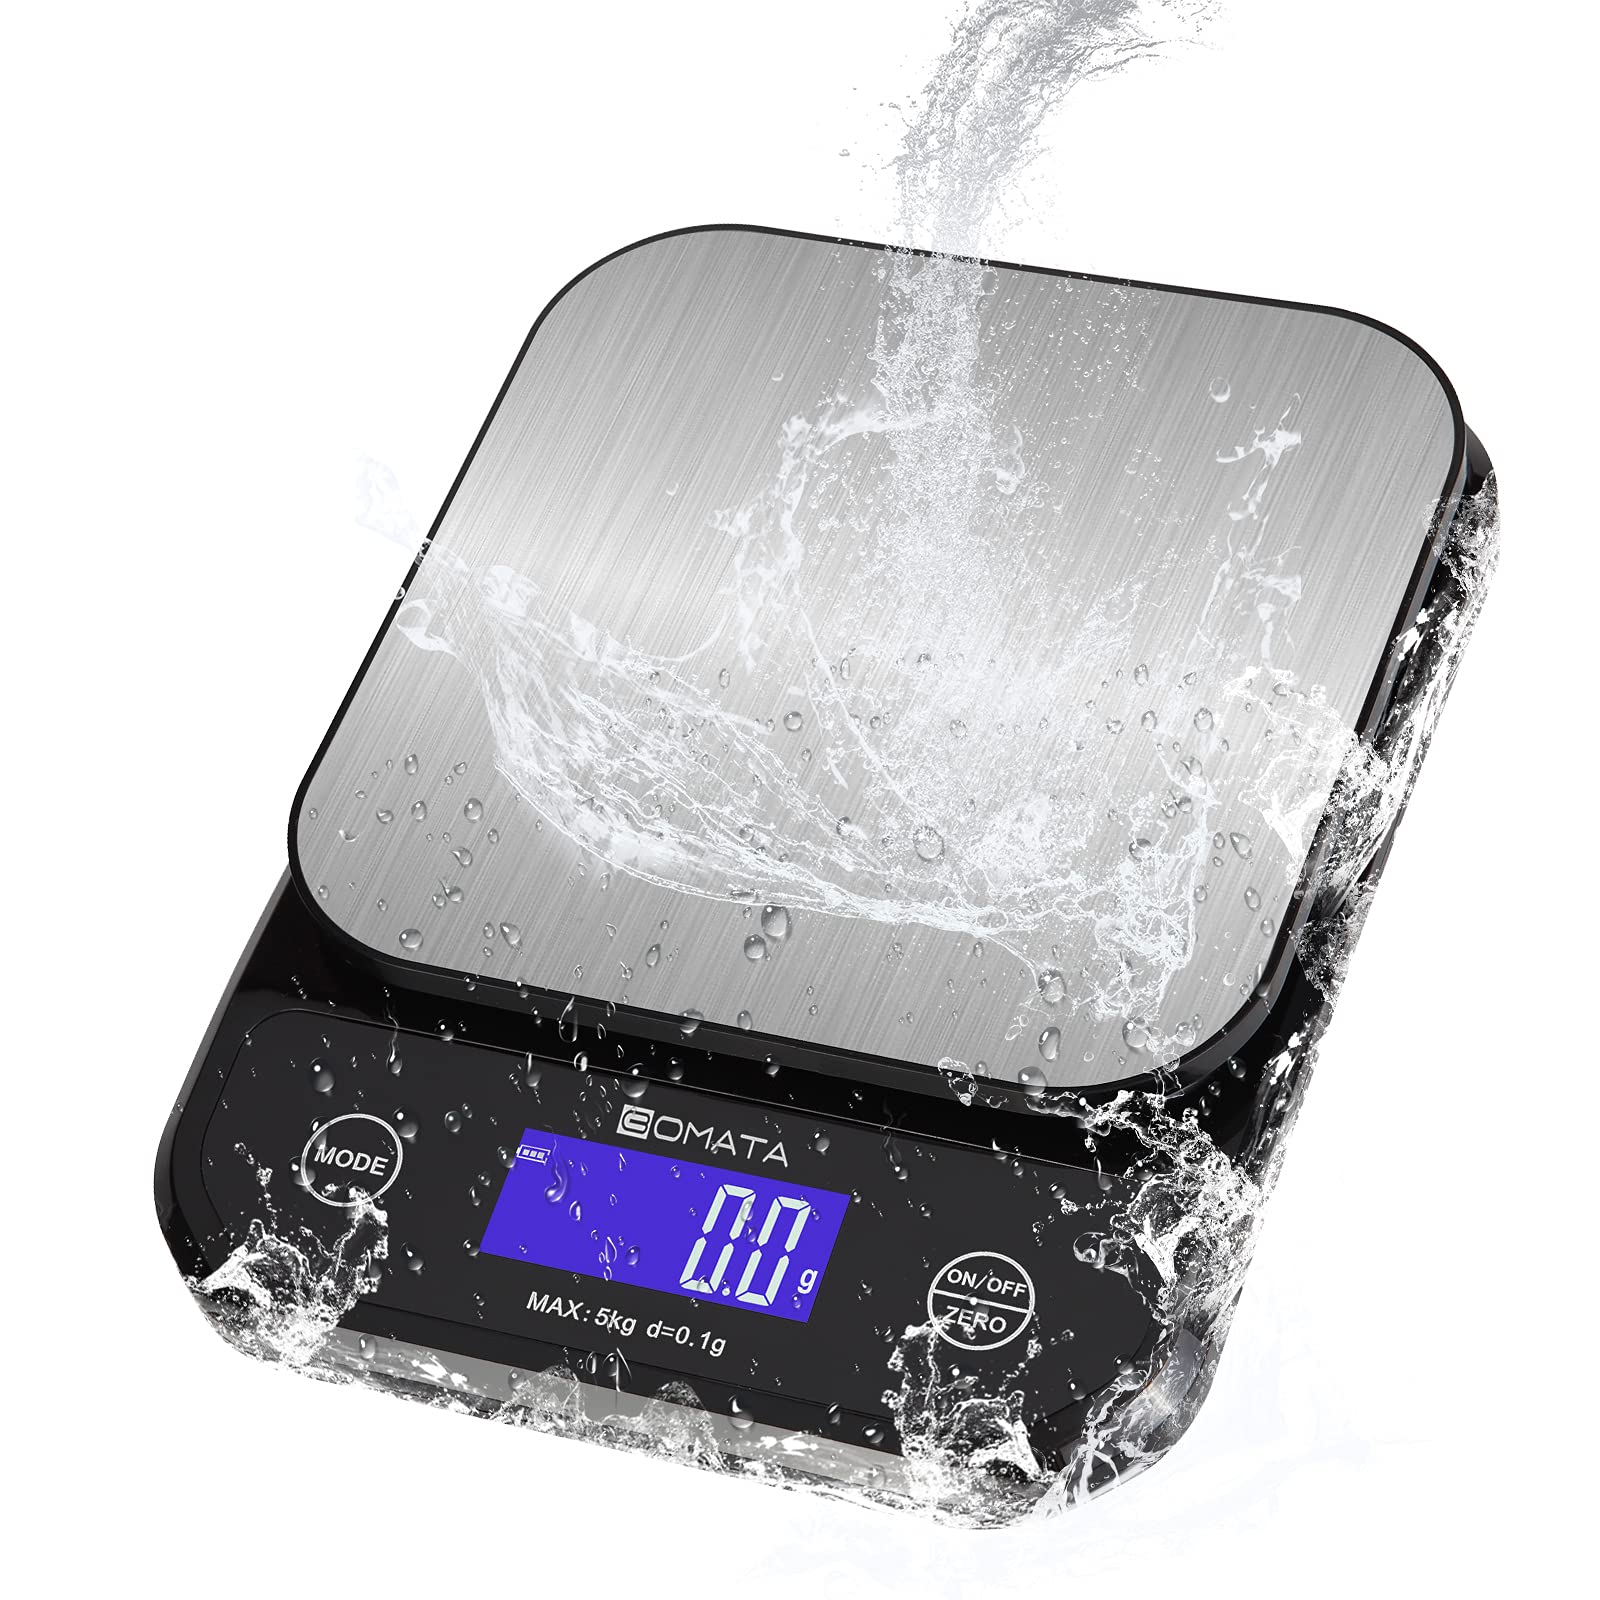 BOMATA (ボマタ) キッチン はかり 防水IP65 洗える 0.1g 5kg USB充電&乾電池 二式給電 全視角LCD タッ..